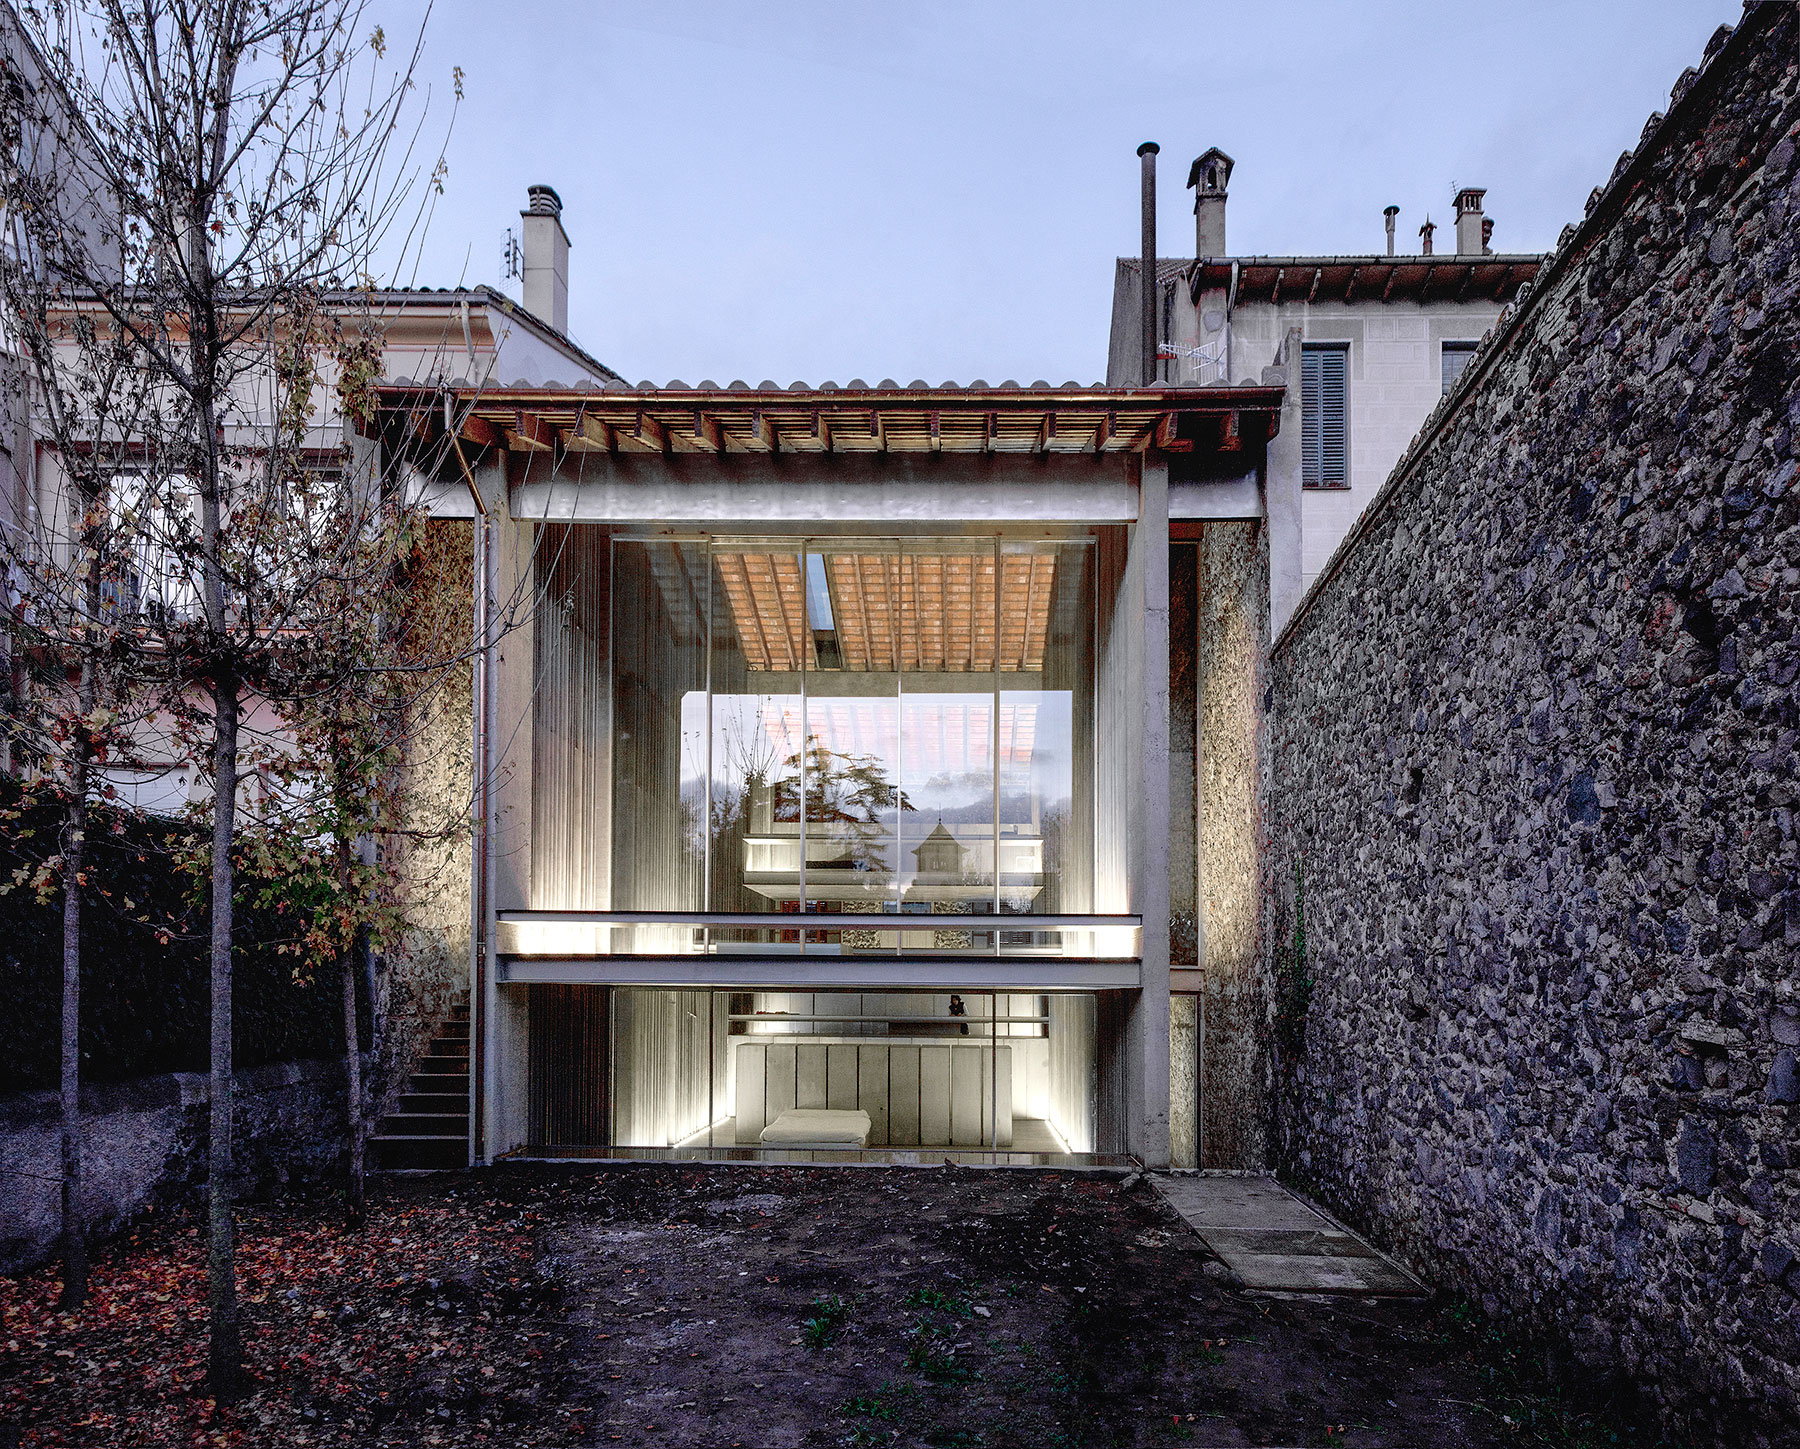 Radový dom, 2012, Olot, Girona, Španielsko, Foto: Hisao Suzuki